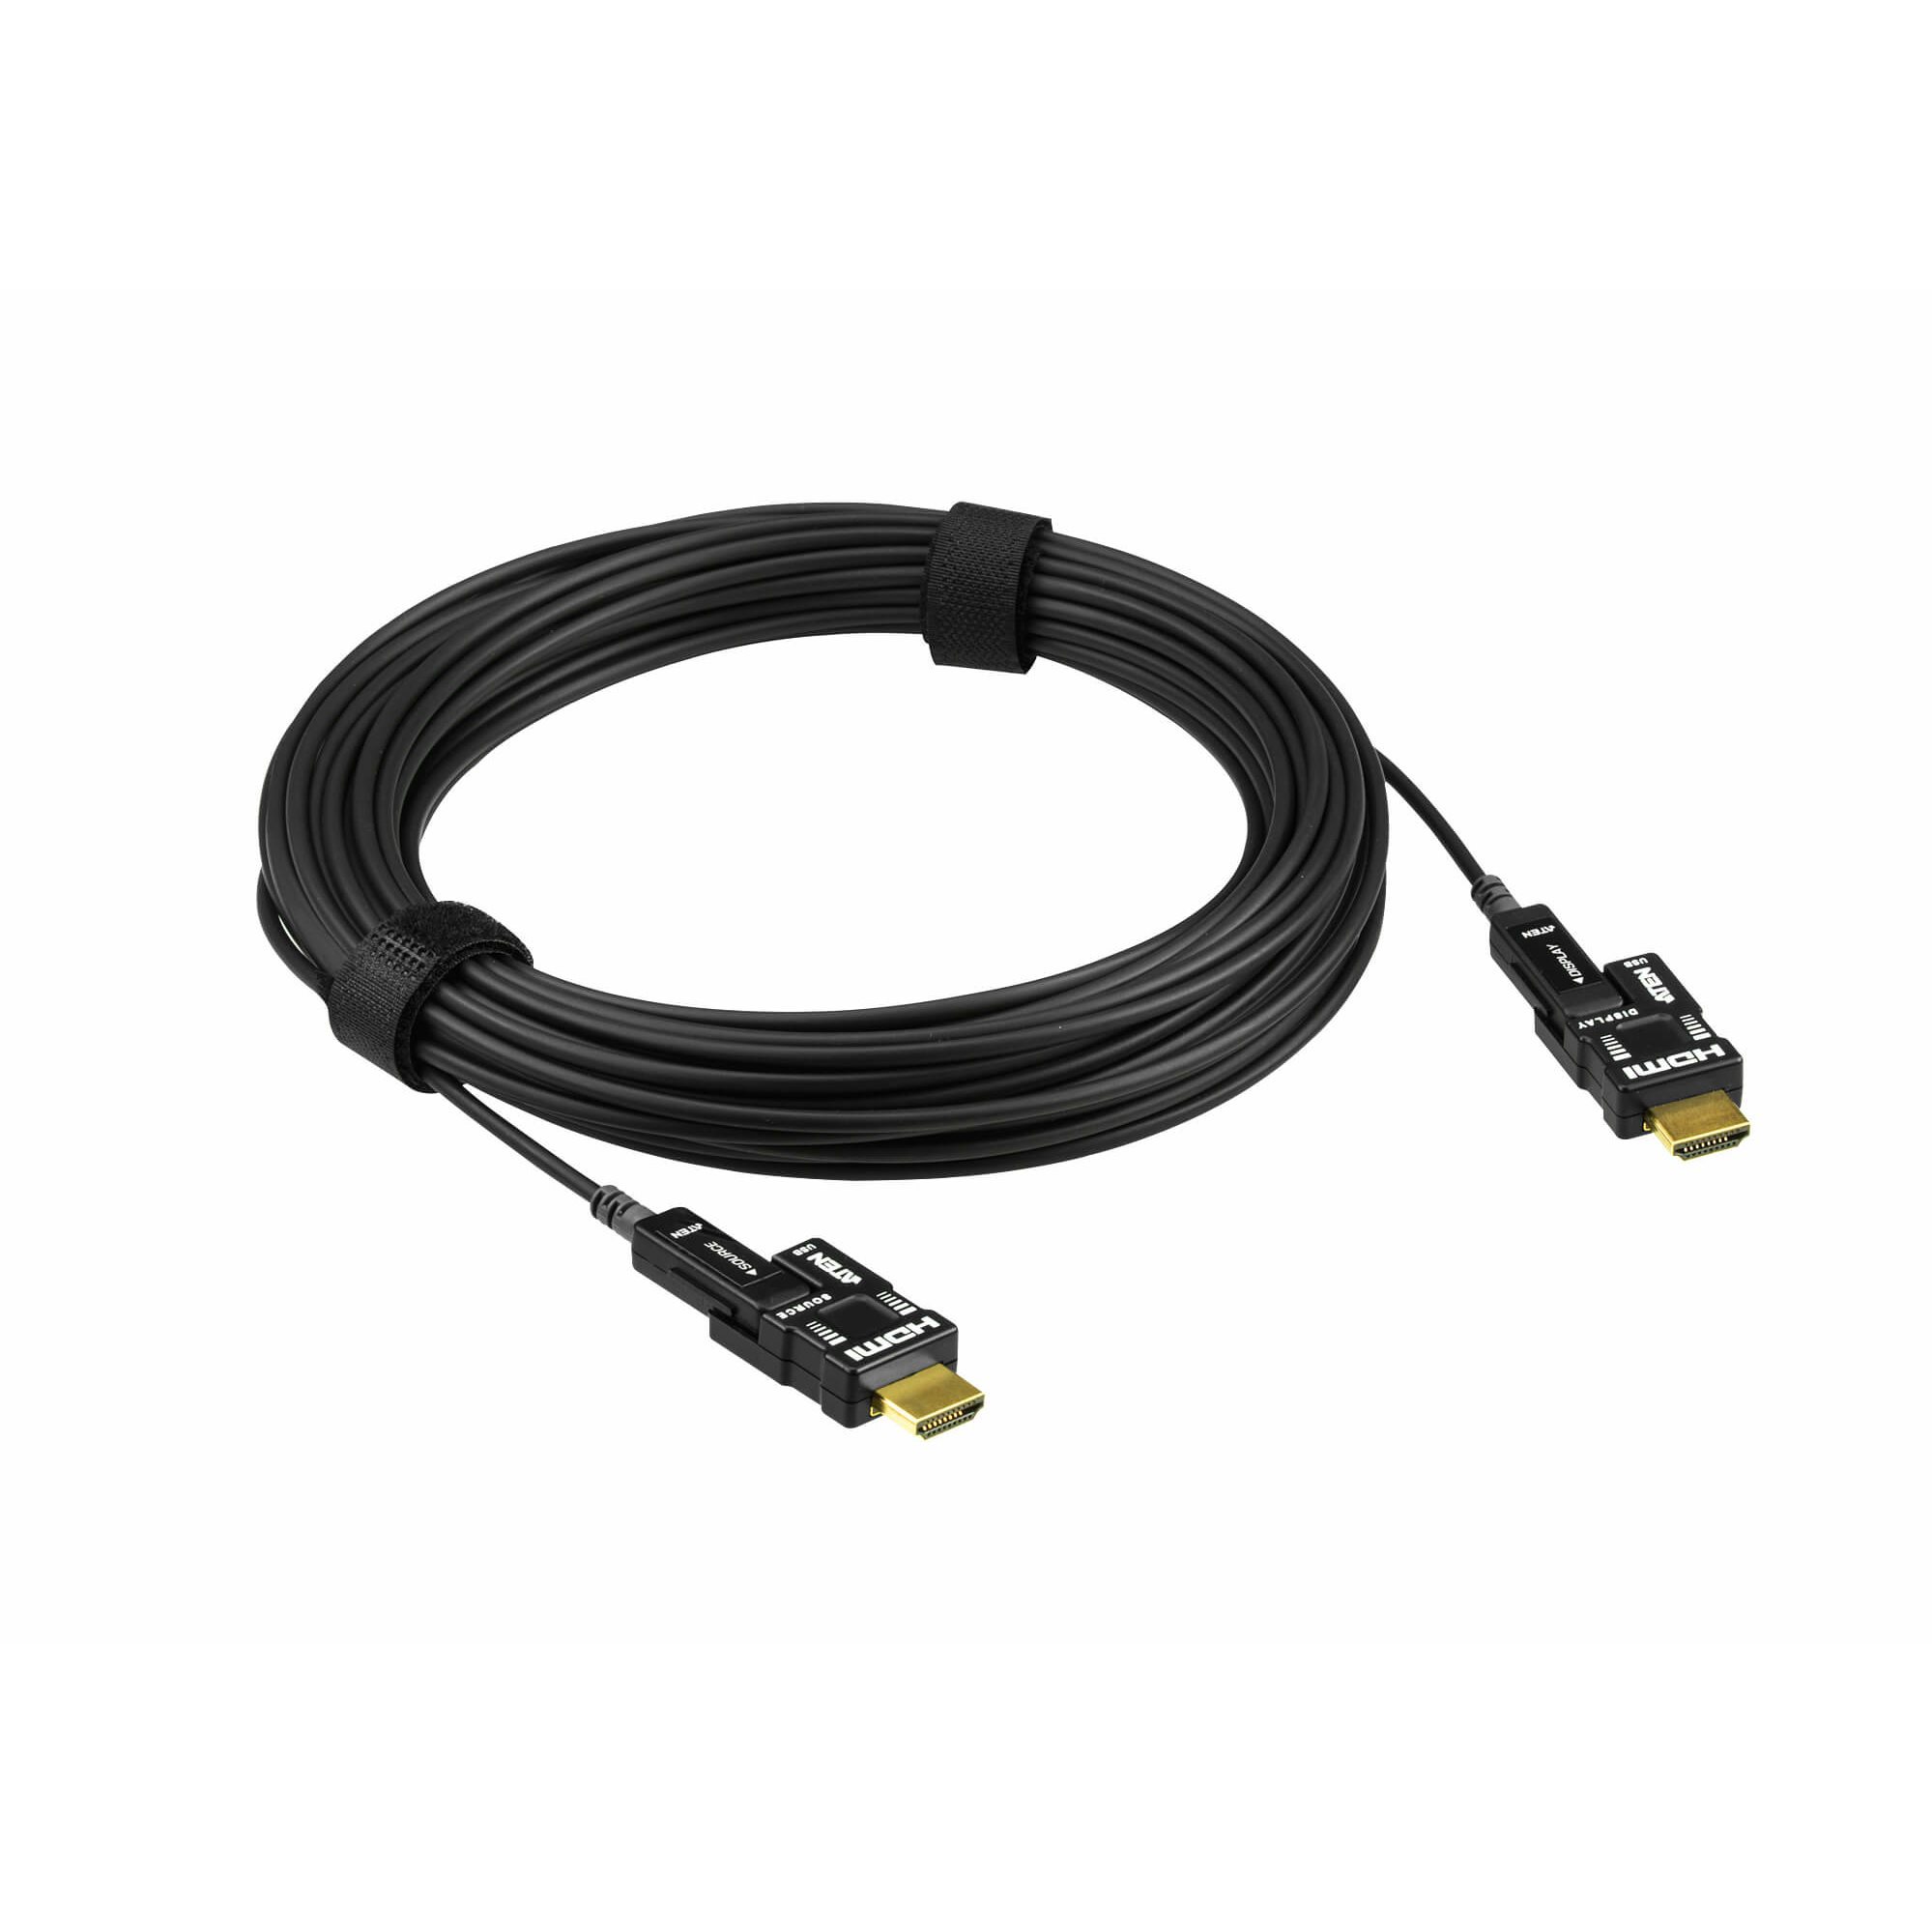   Déport vidéo   Câble HDMI actif 4K 30m sur fibre optique VE7833-AT